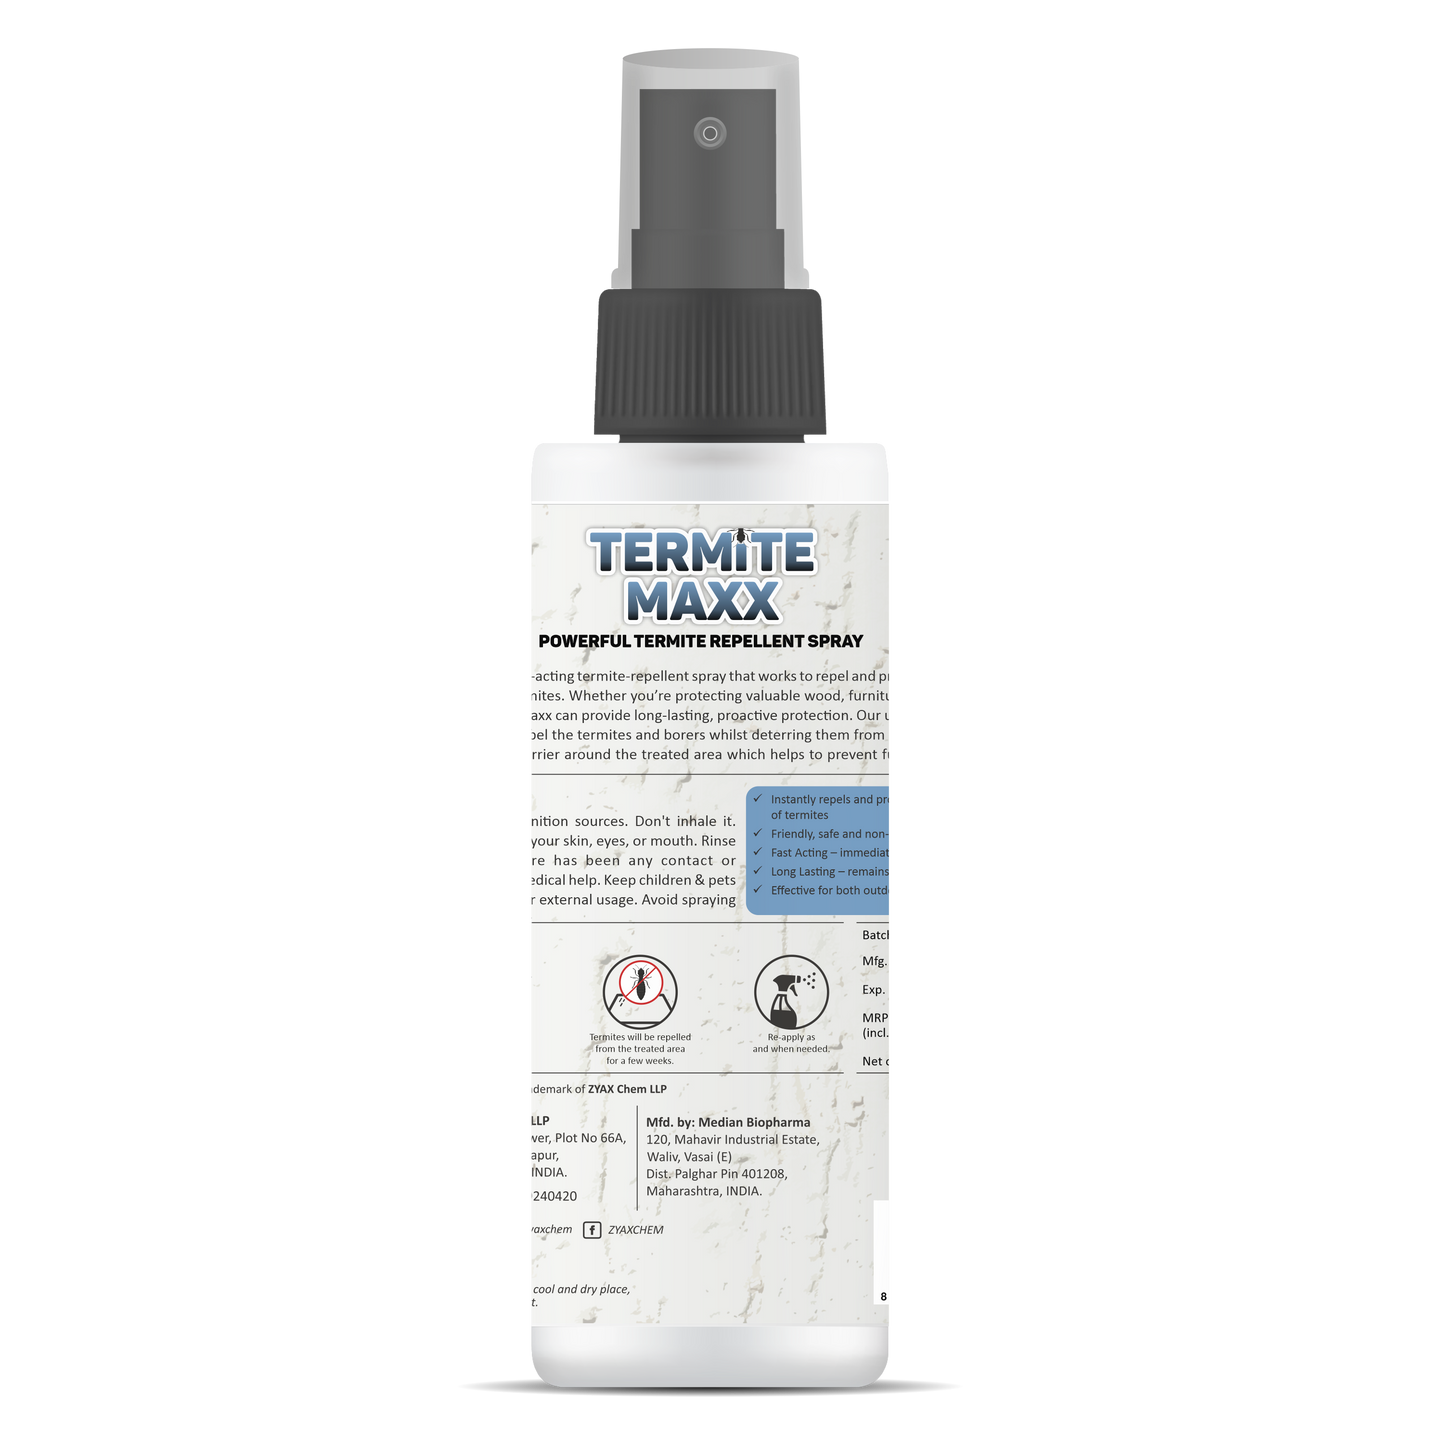 Zyax Termite Maxx - Non-Toxic Termite Repellent Spray - Zyax.in